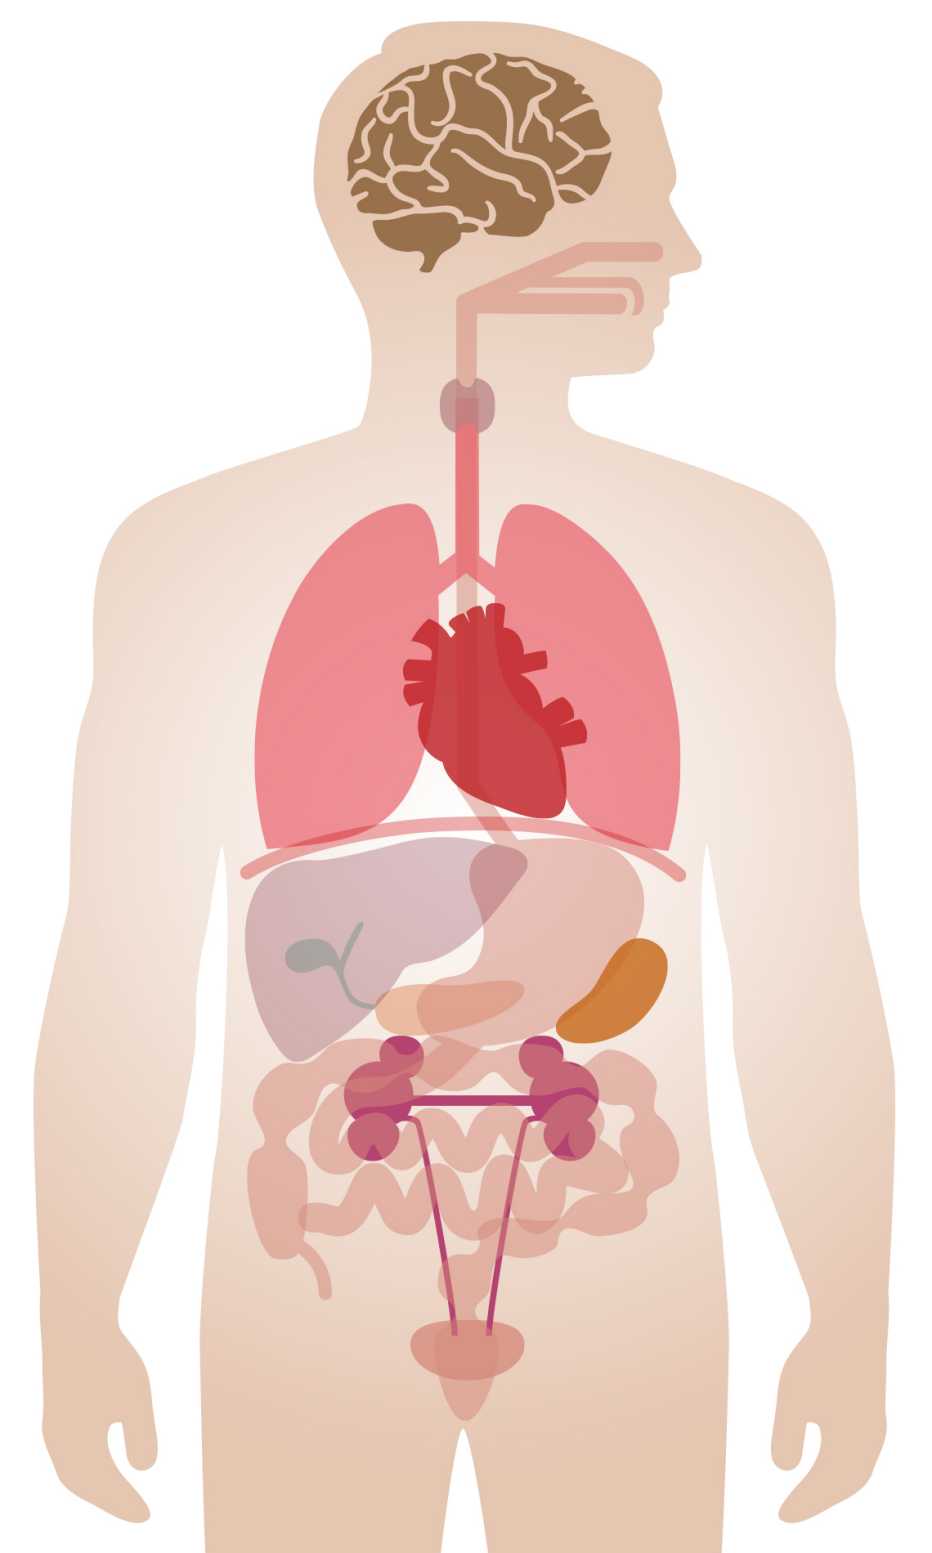 illustration of human body internal organs